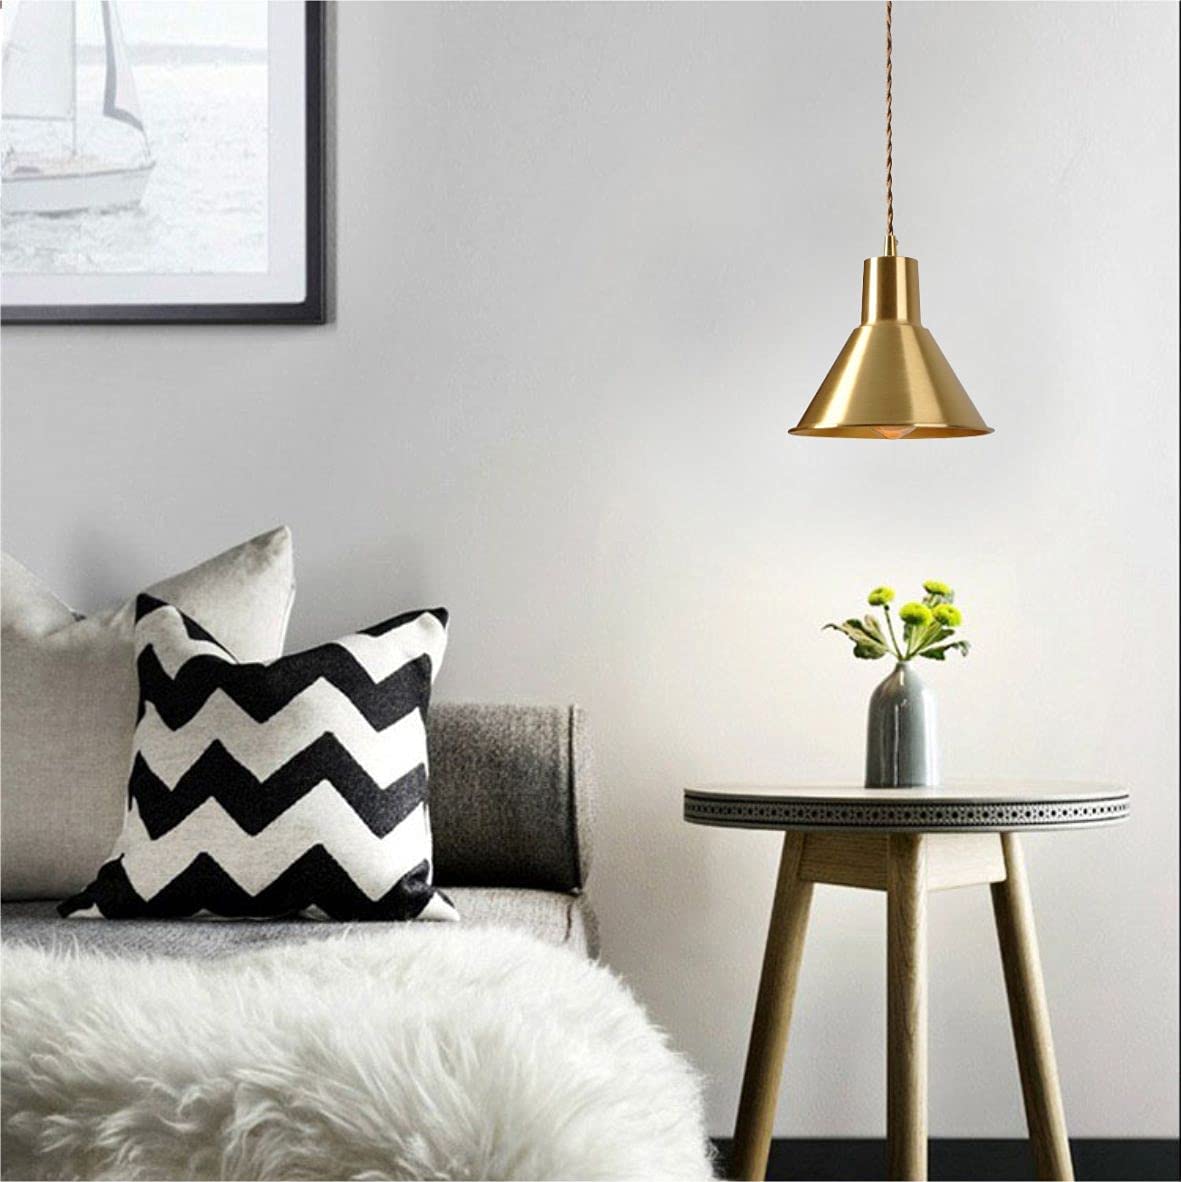 Modern pendant kitchen light fixtures golden industrial chandelier lighting